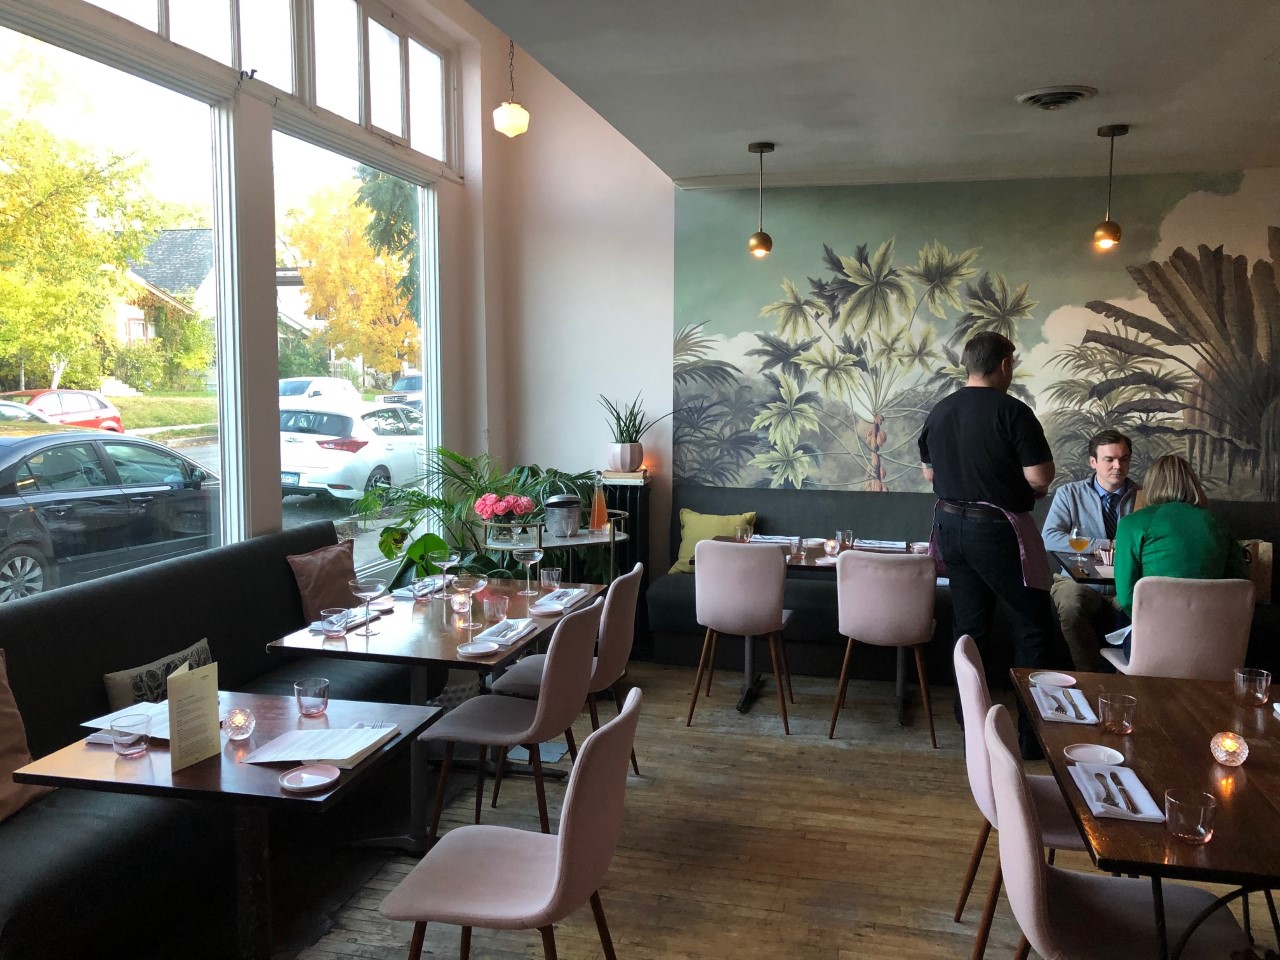 Restaurant review of Grand Café